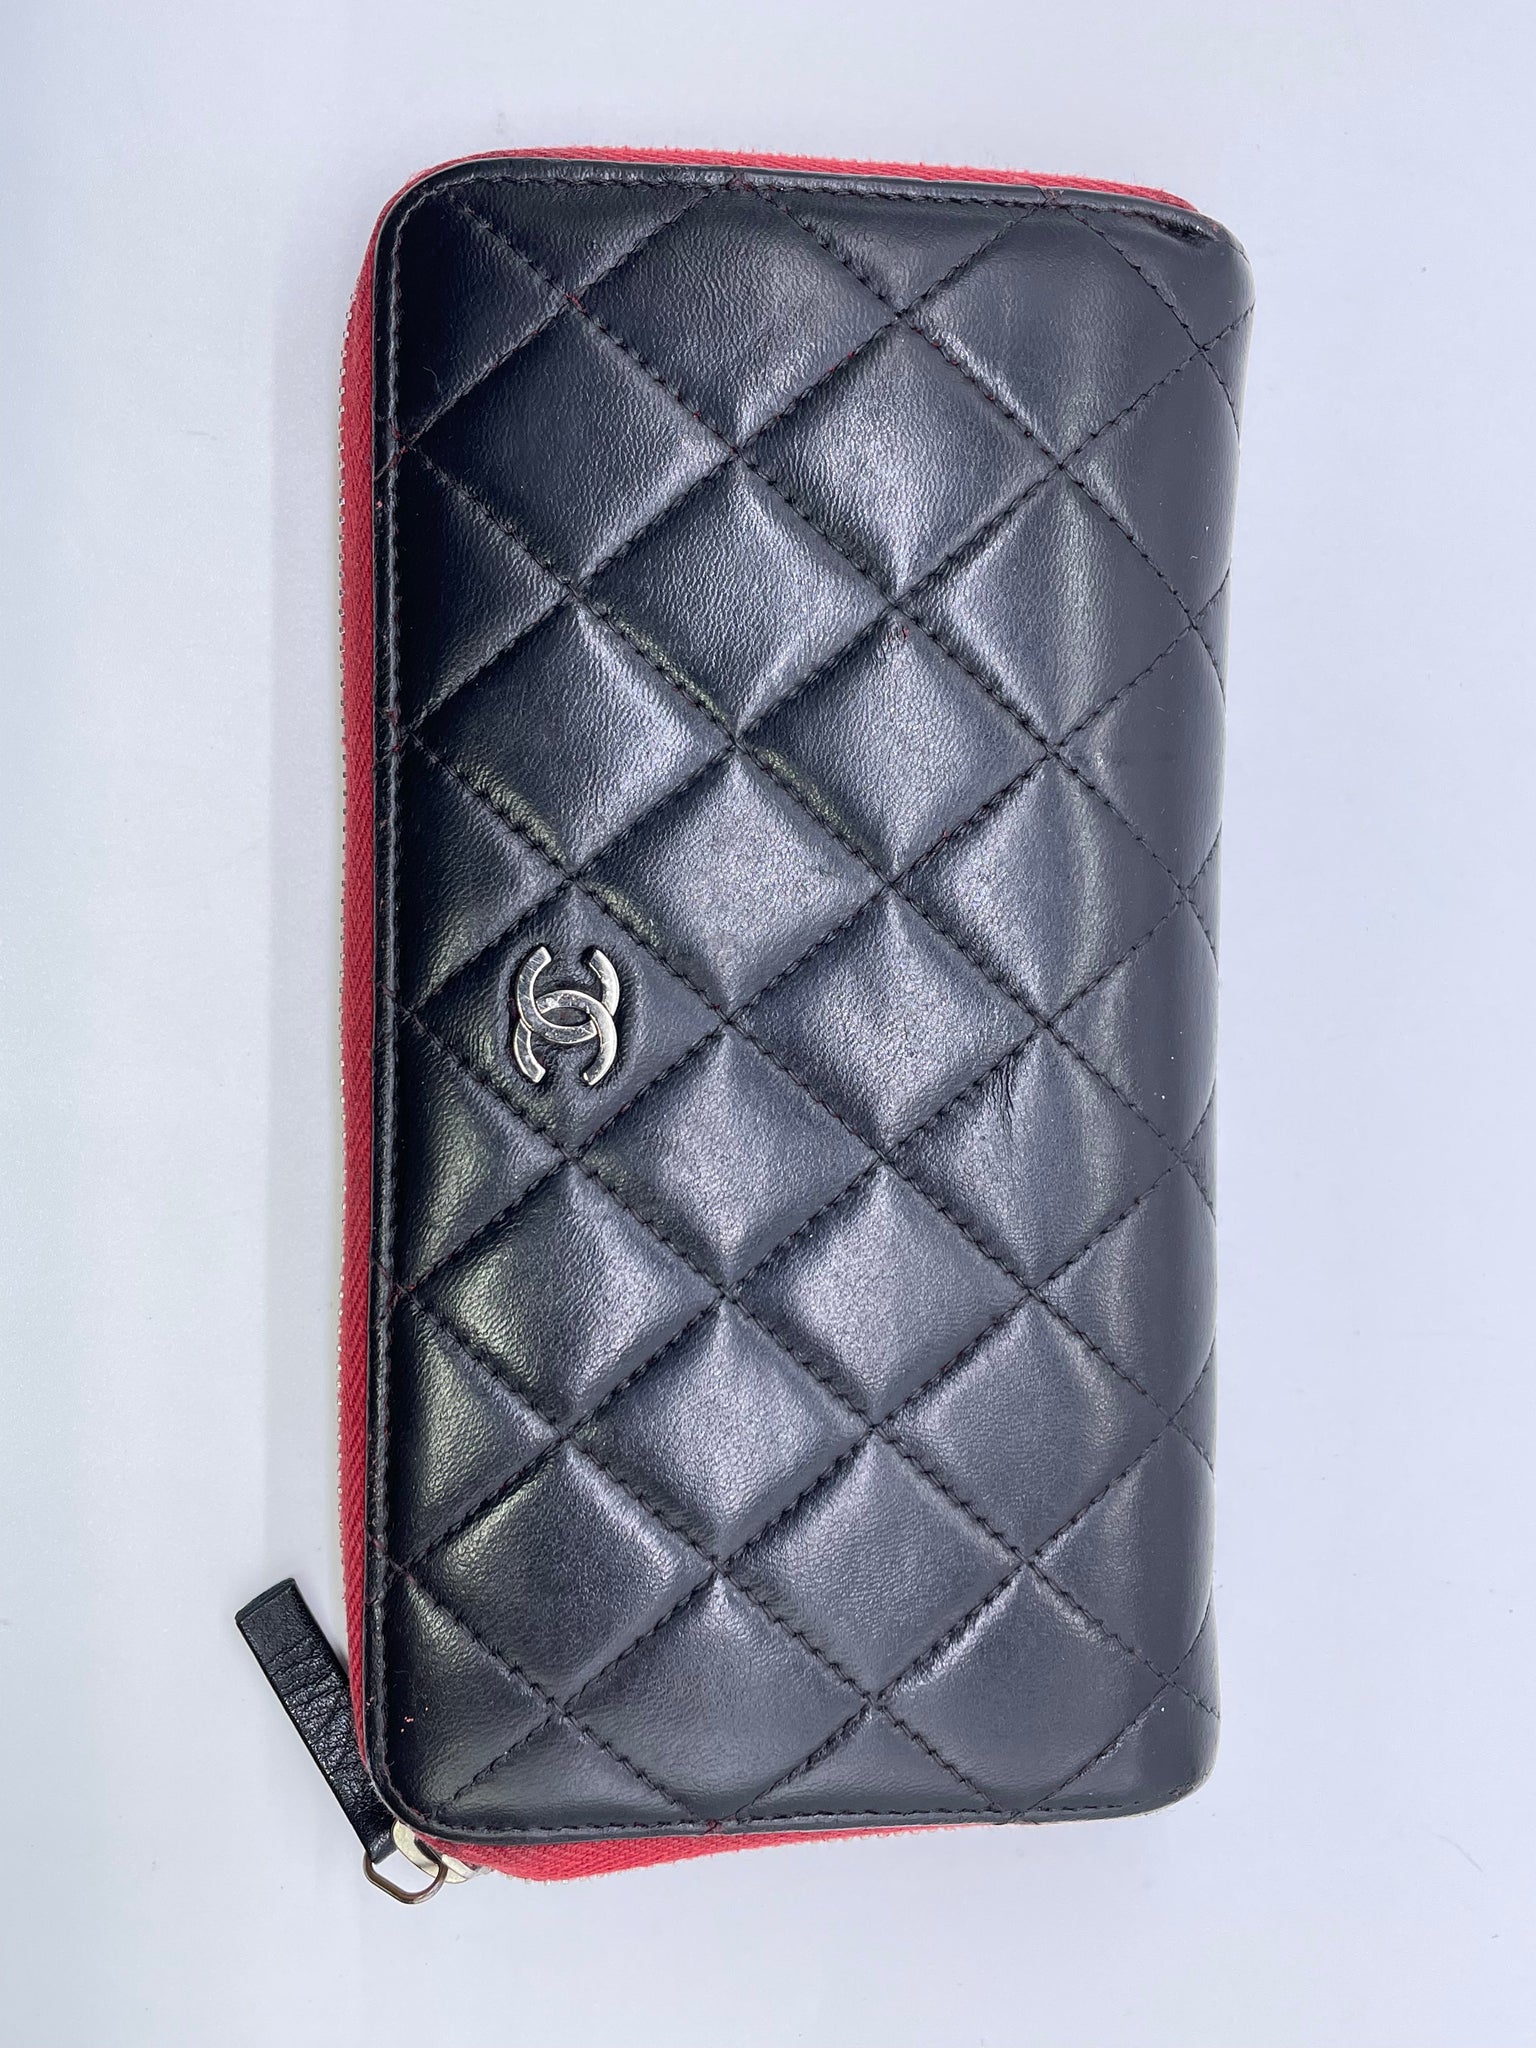 Chanel Long Zippy Wallet - Black/Silver